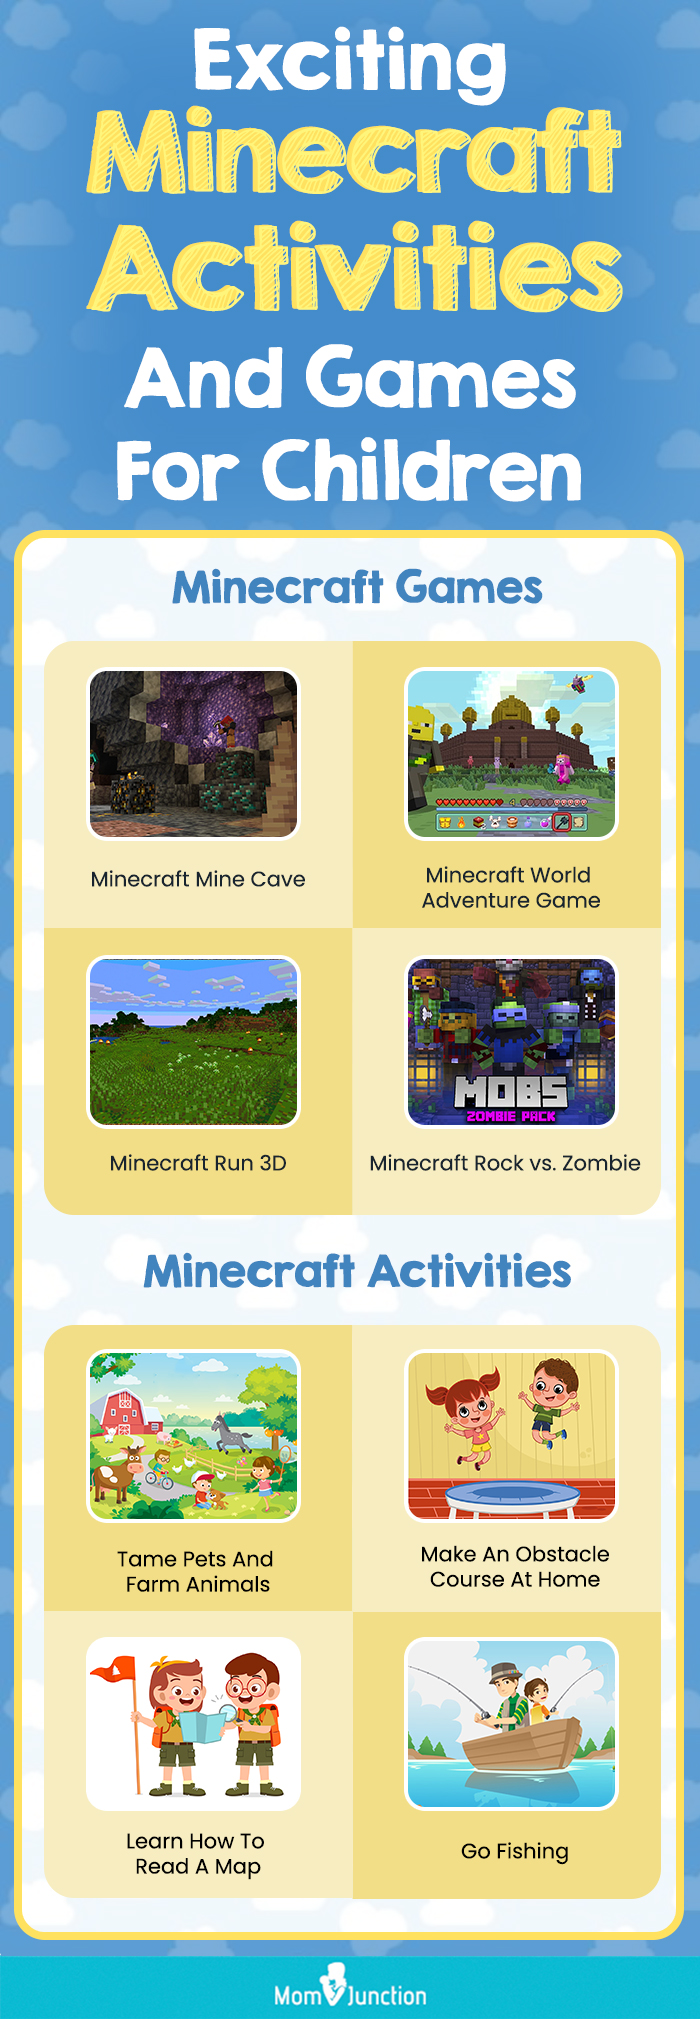 Minecraft Games - Free Online Minecraft Games on